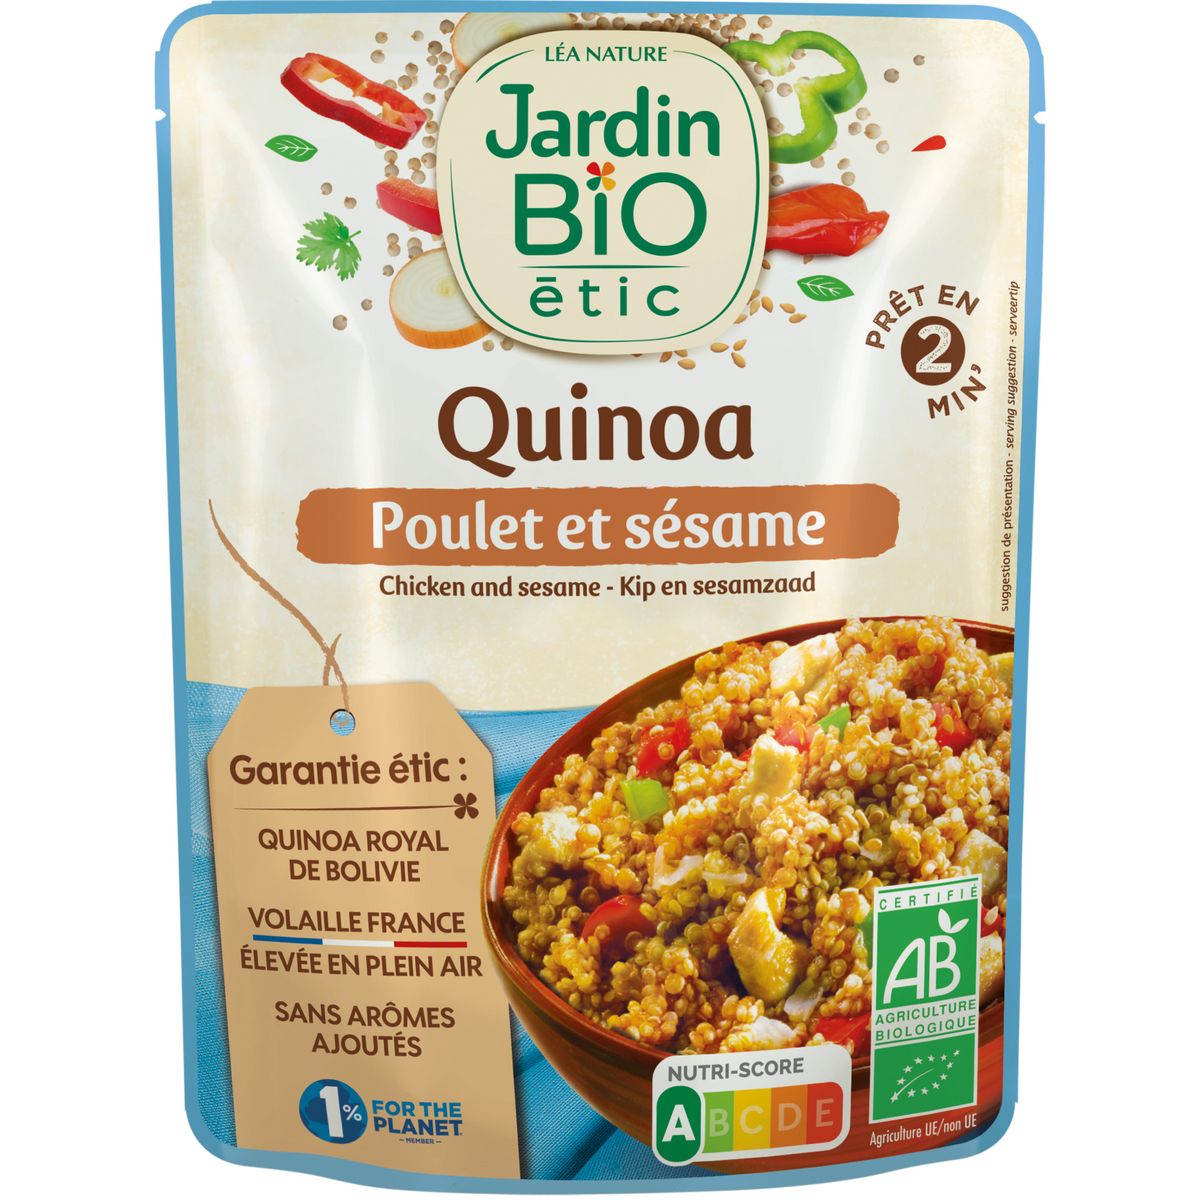 JARDIN BIO ETIC Quinoa poulet sésame sachet express 1 personne 250g